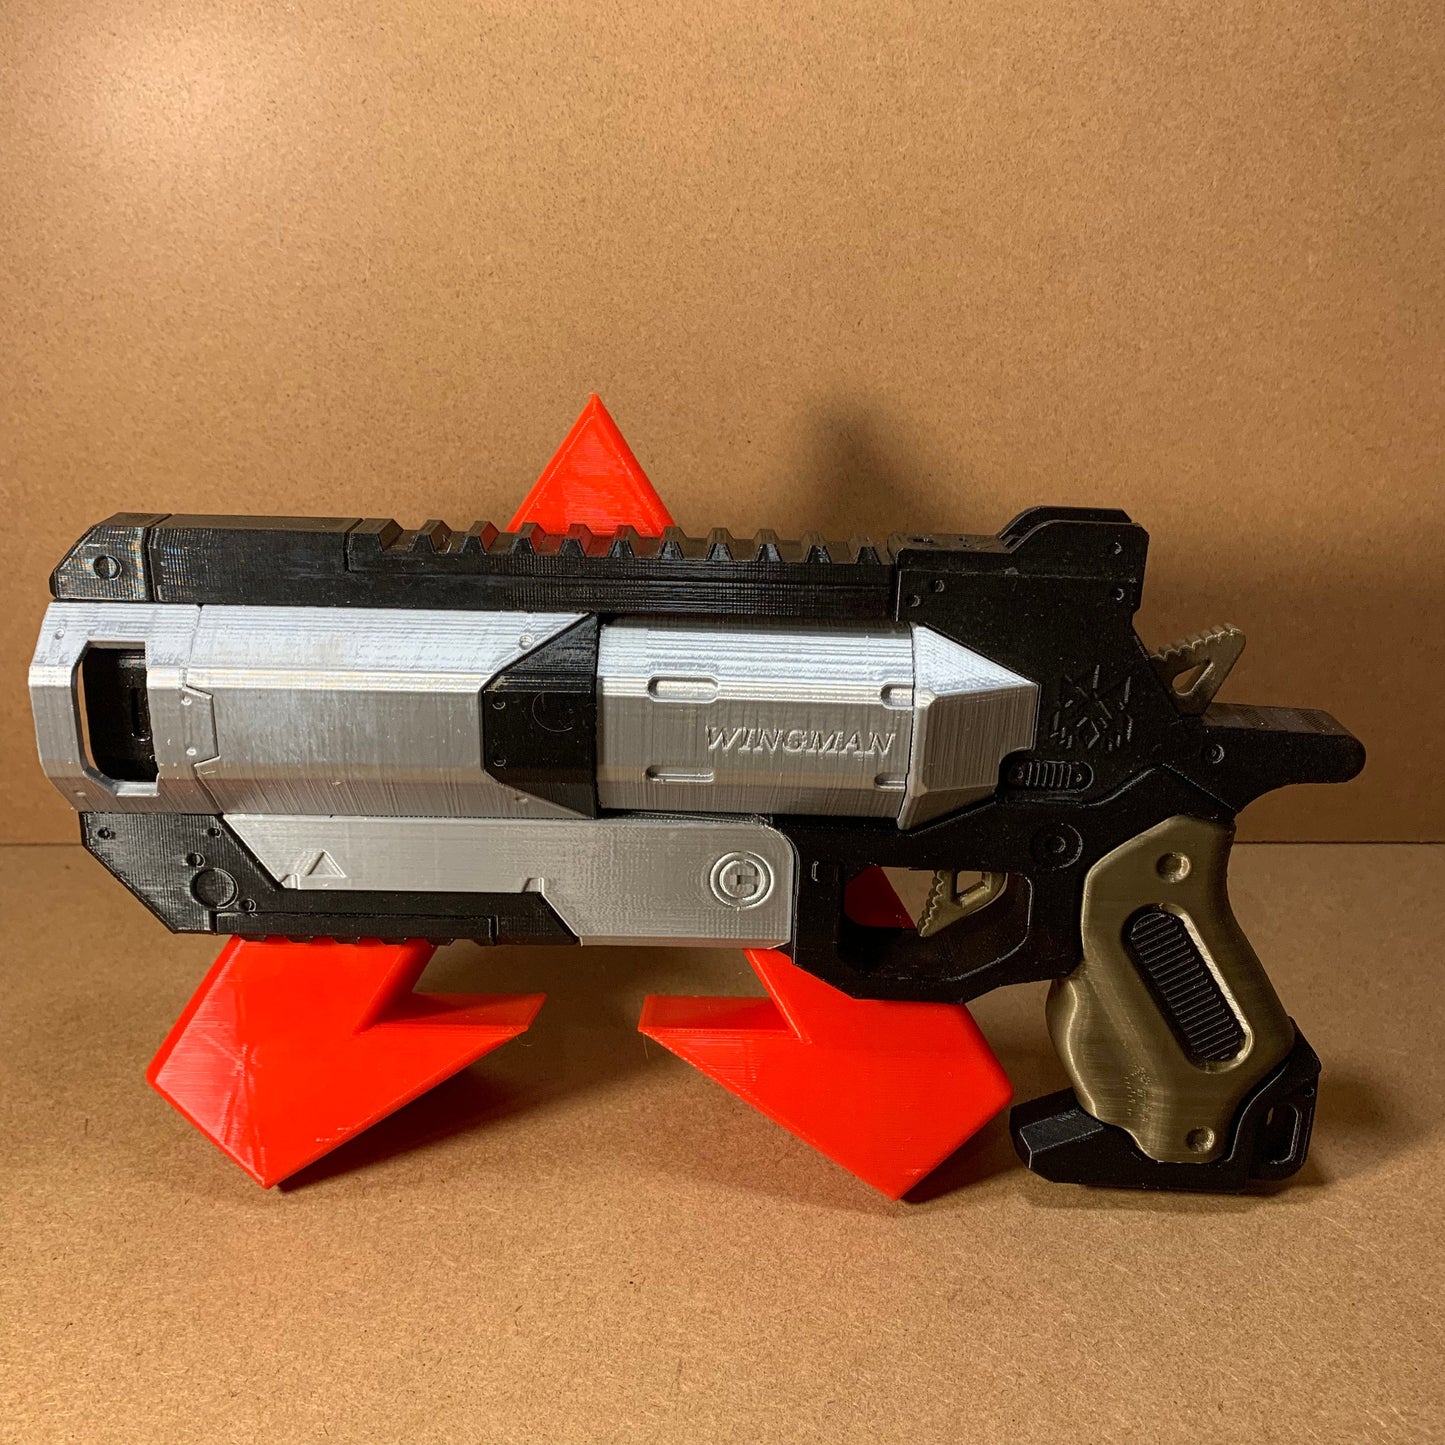 WINGMAN / Apex Legend Style Pistol / FULL SIZE / Replica Blaster / Actual 1:1 Scale Pistol Handgun Cosplay / Gamer Gift Prop Gun